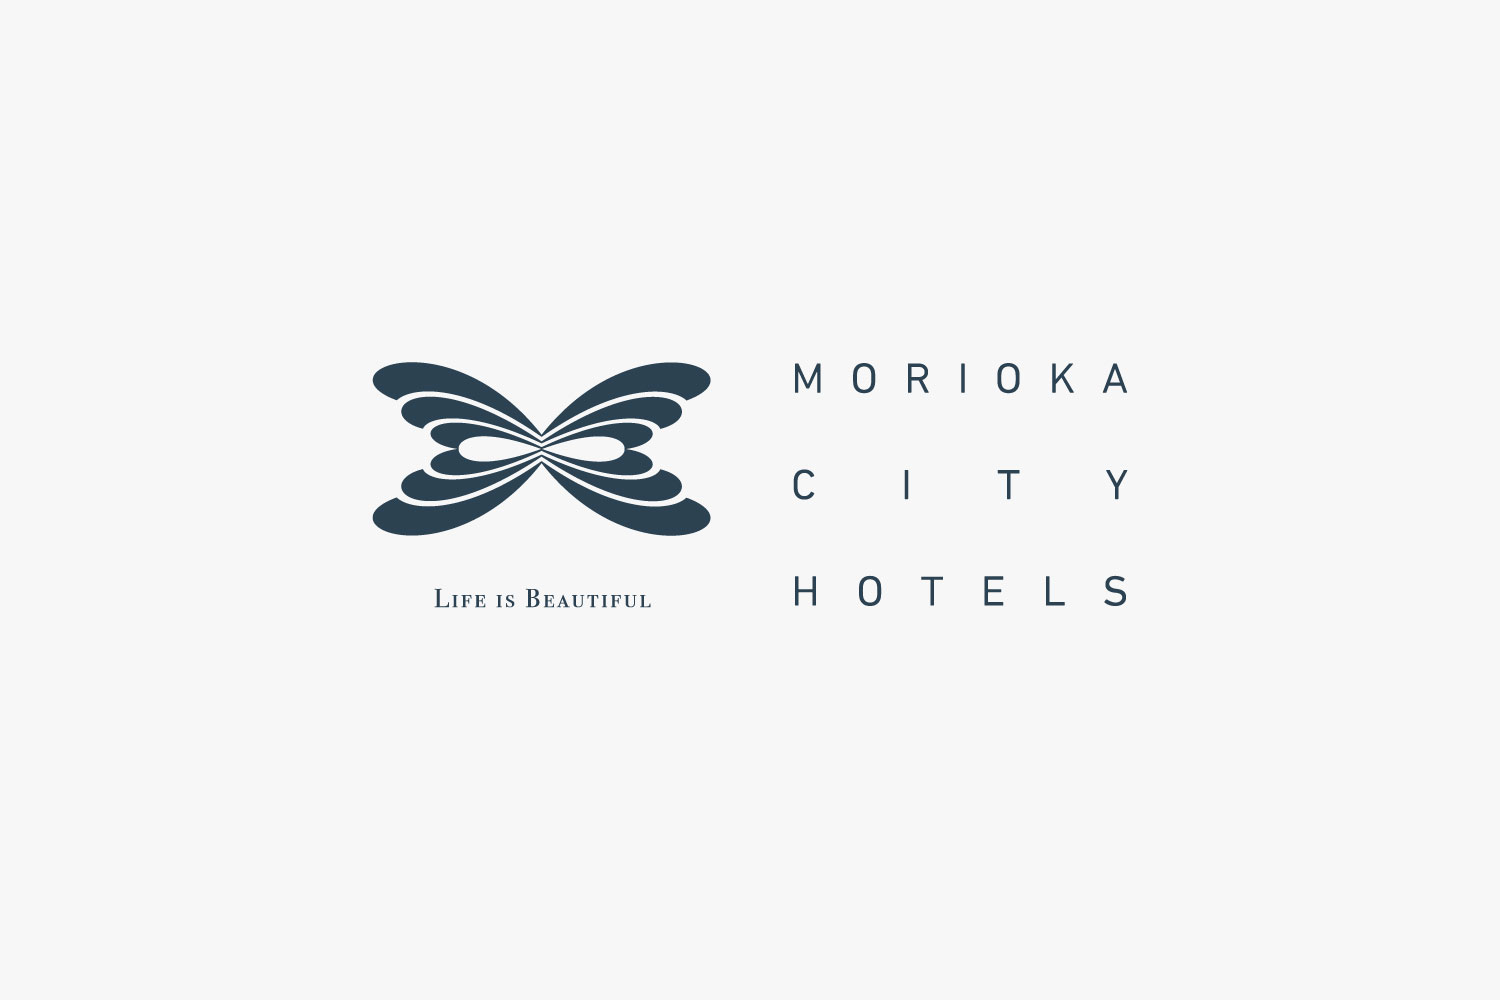 Morioka City Hotels Logomark